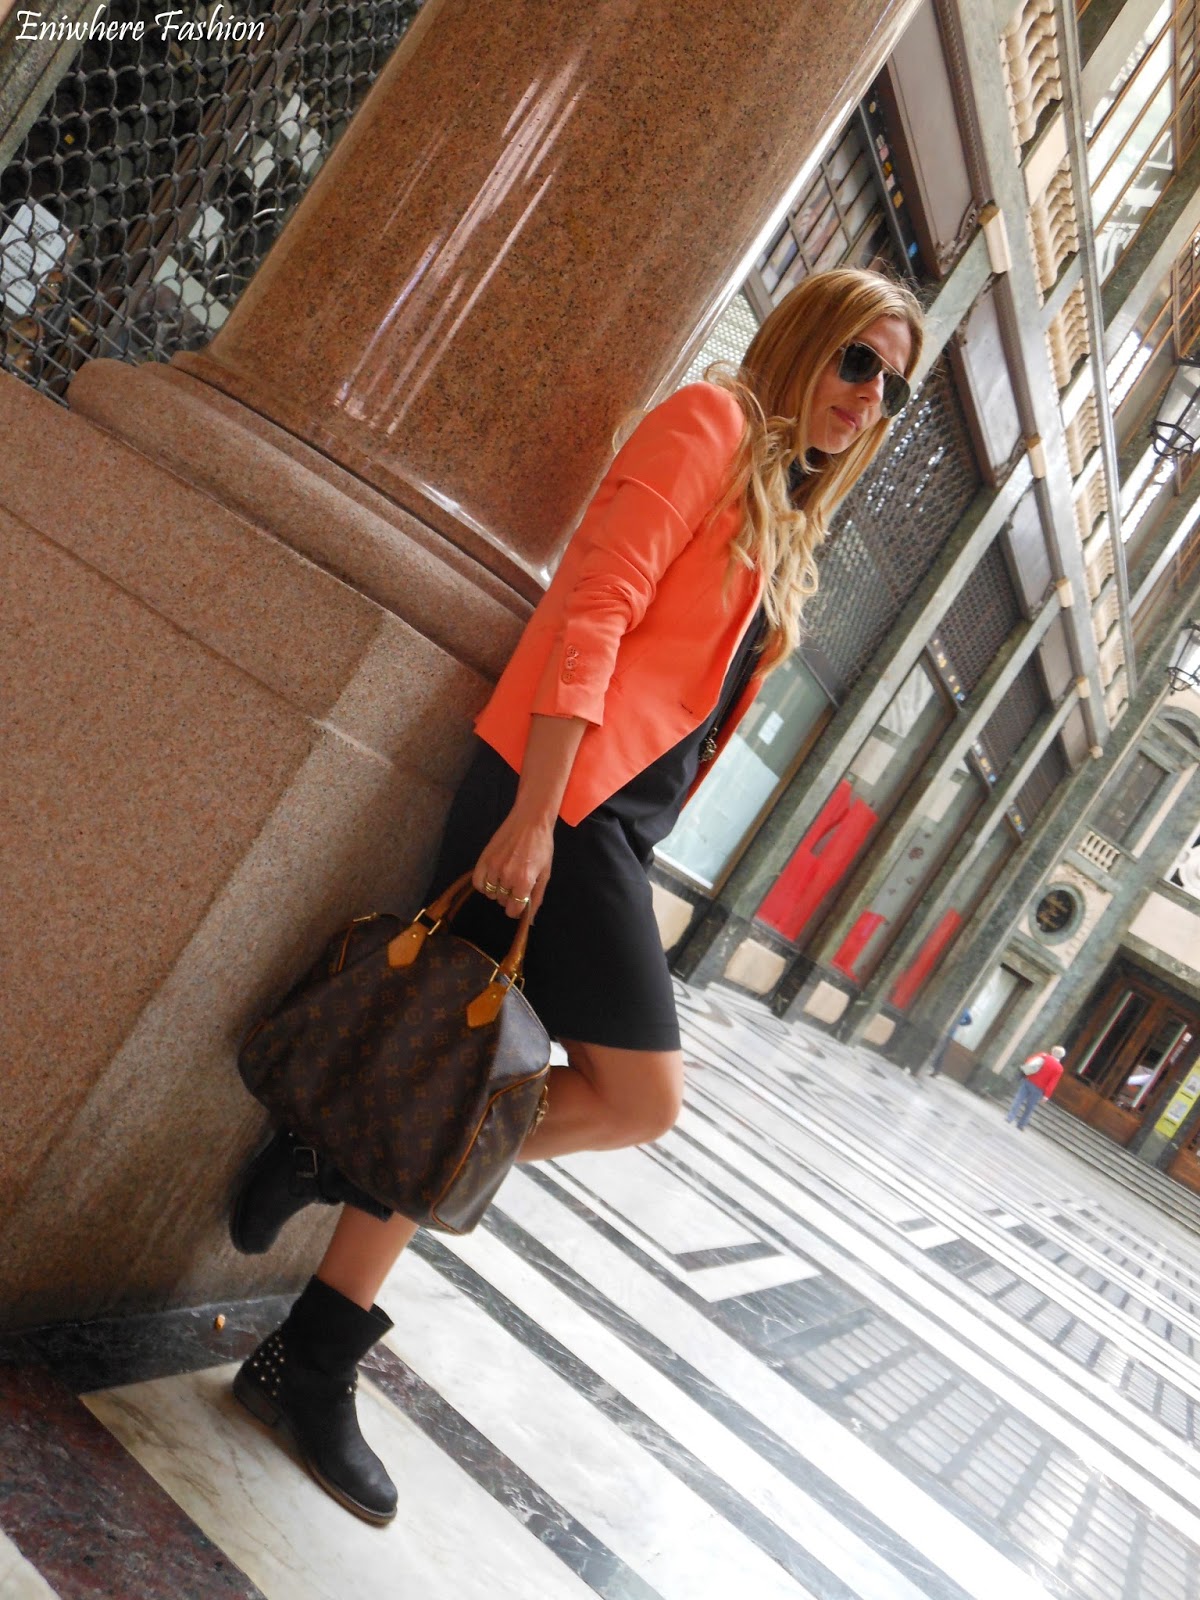 Eniwhere Fashion - Torino - giacca arancio - tubino nero